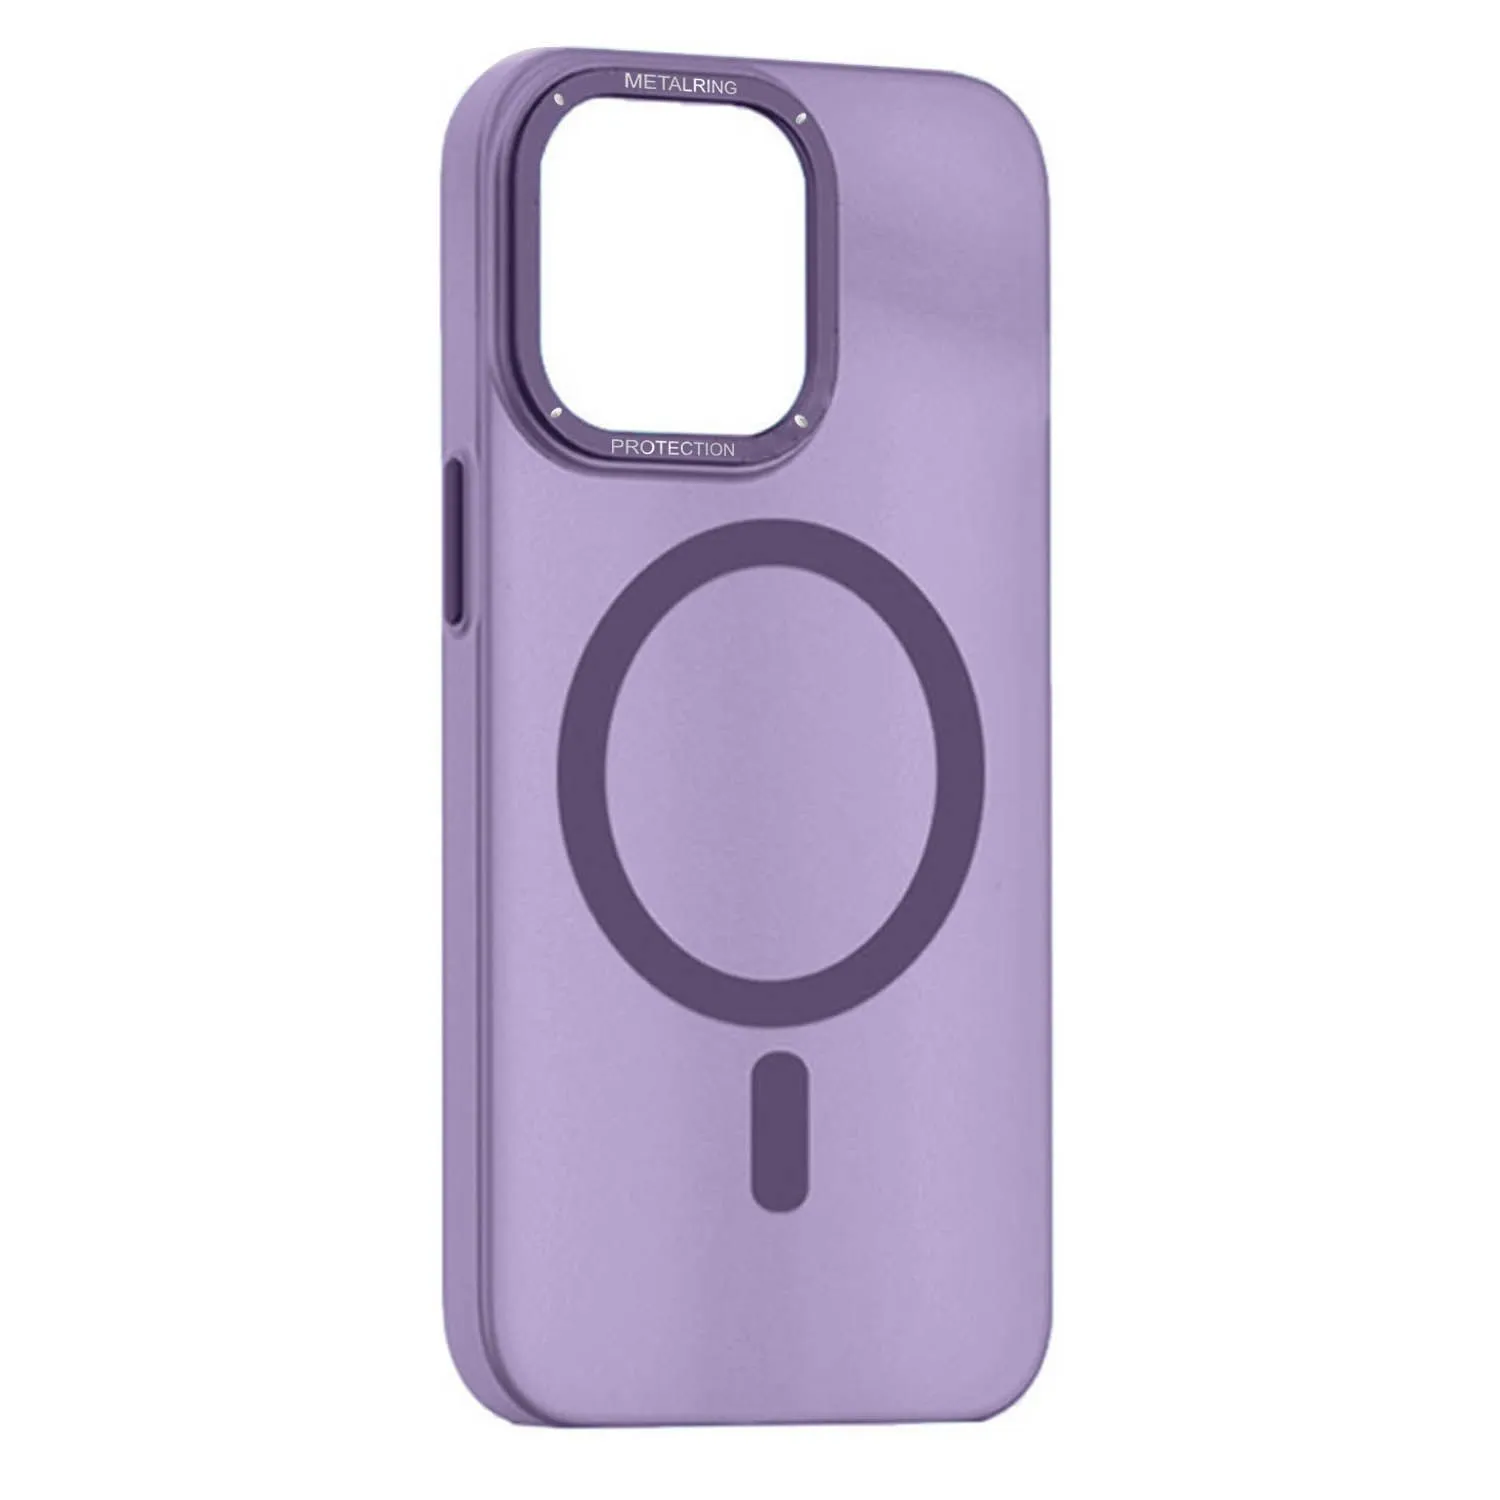 Матовый чехол Apple iPhone 11 с металлической окантовкой с MagSafe (фиолетовый)